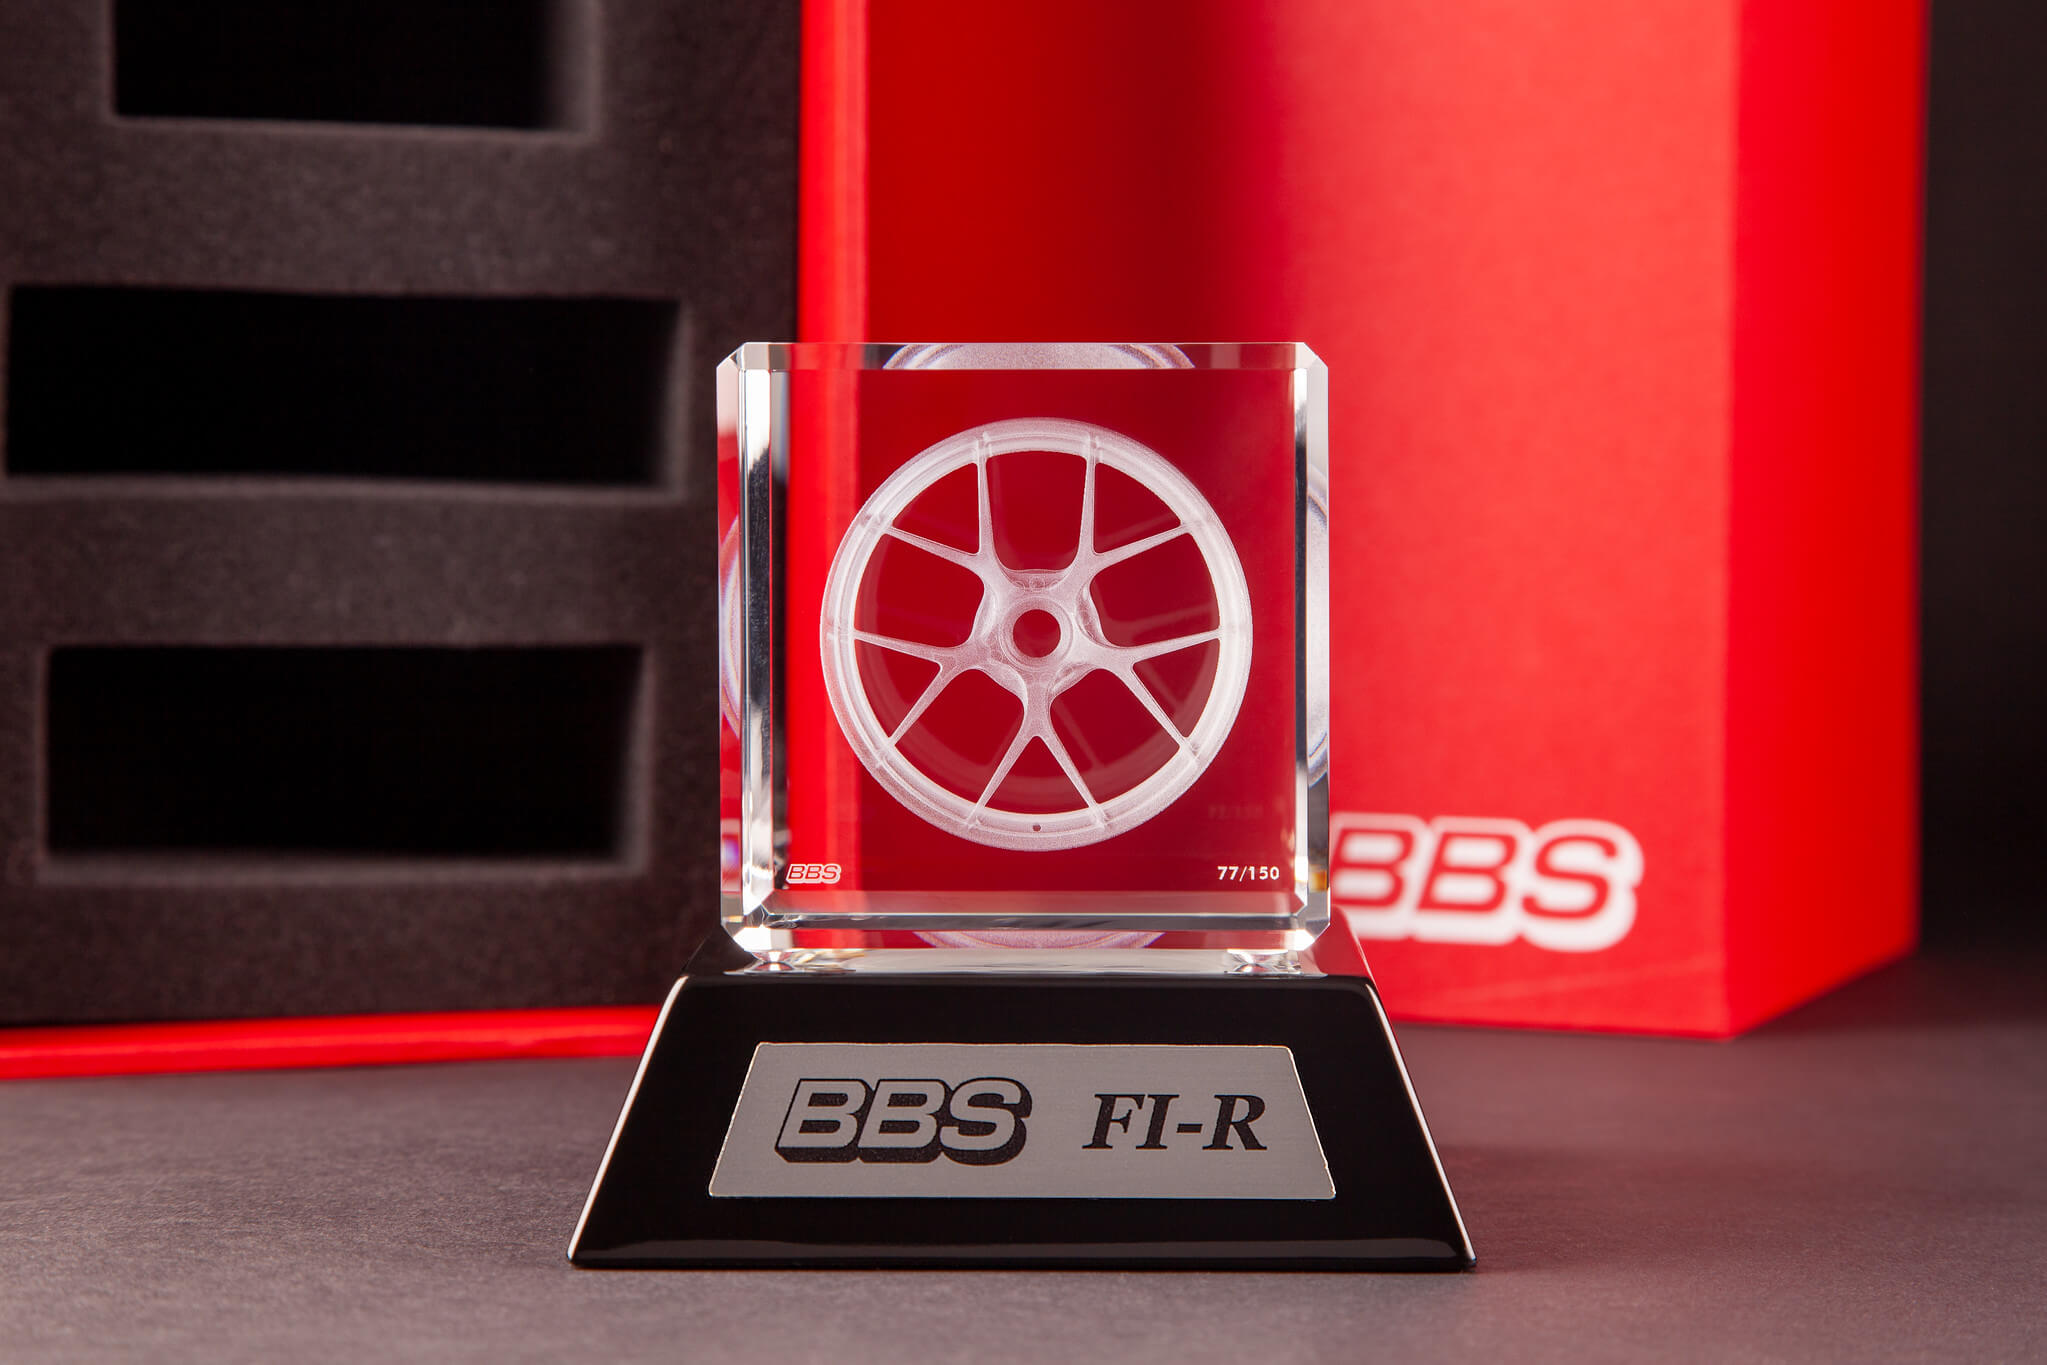 bbs - service award plaque